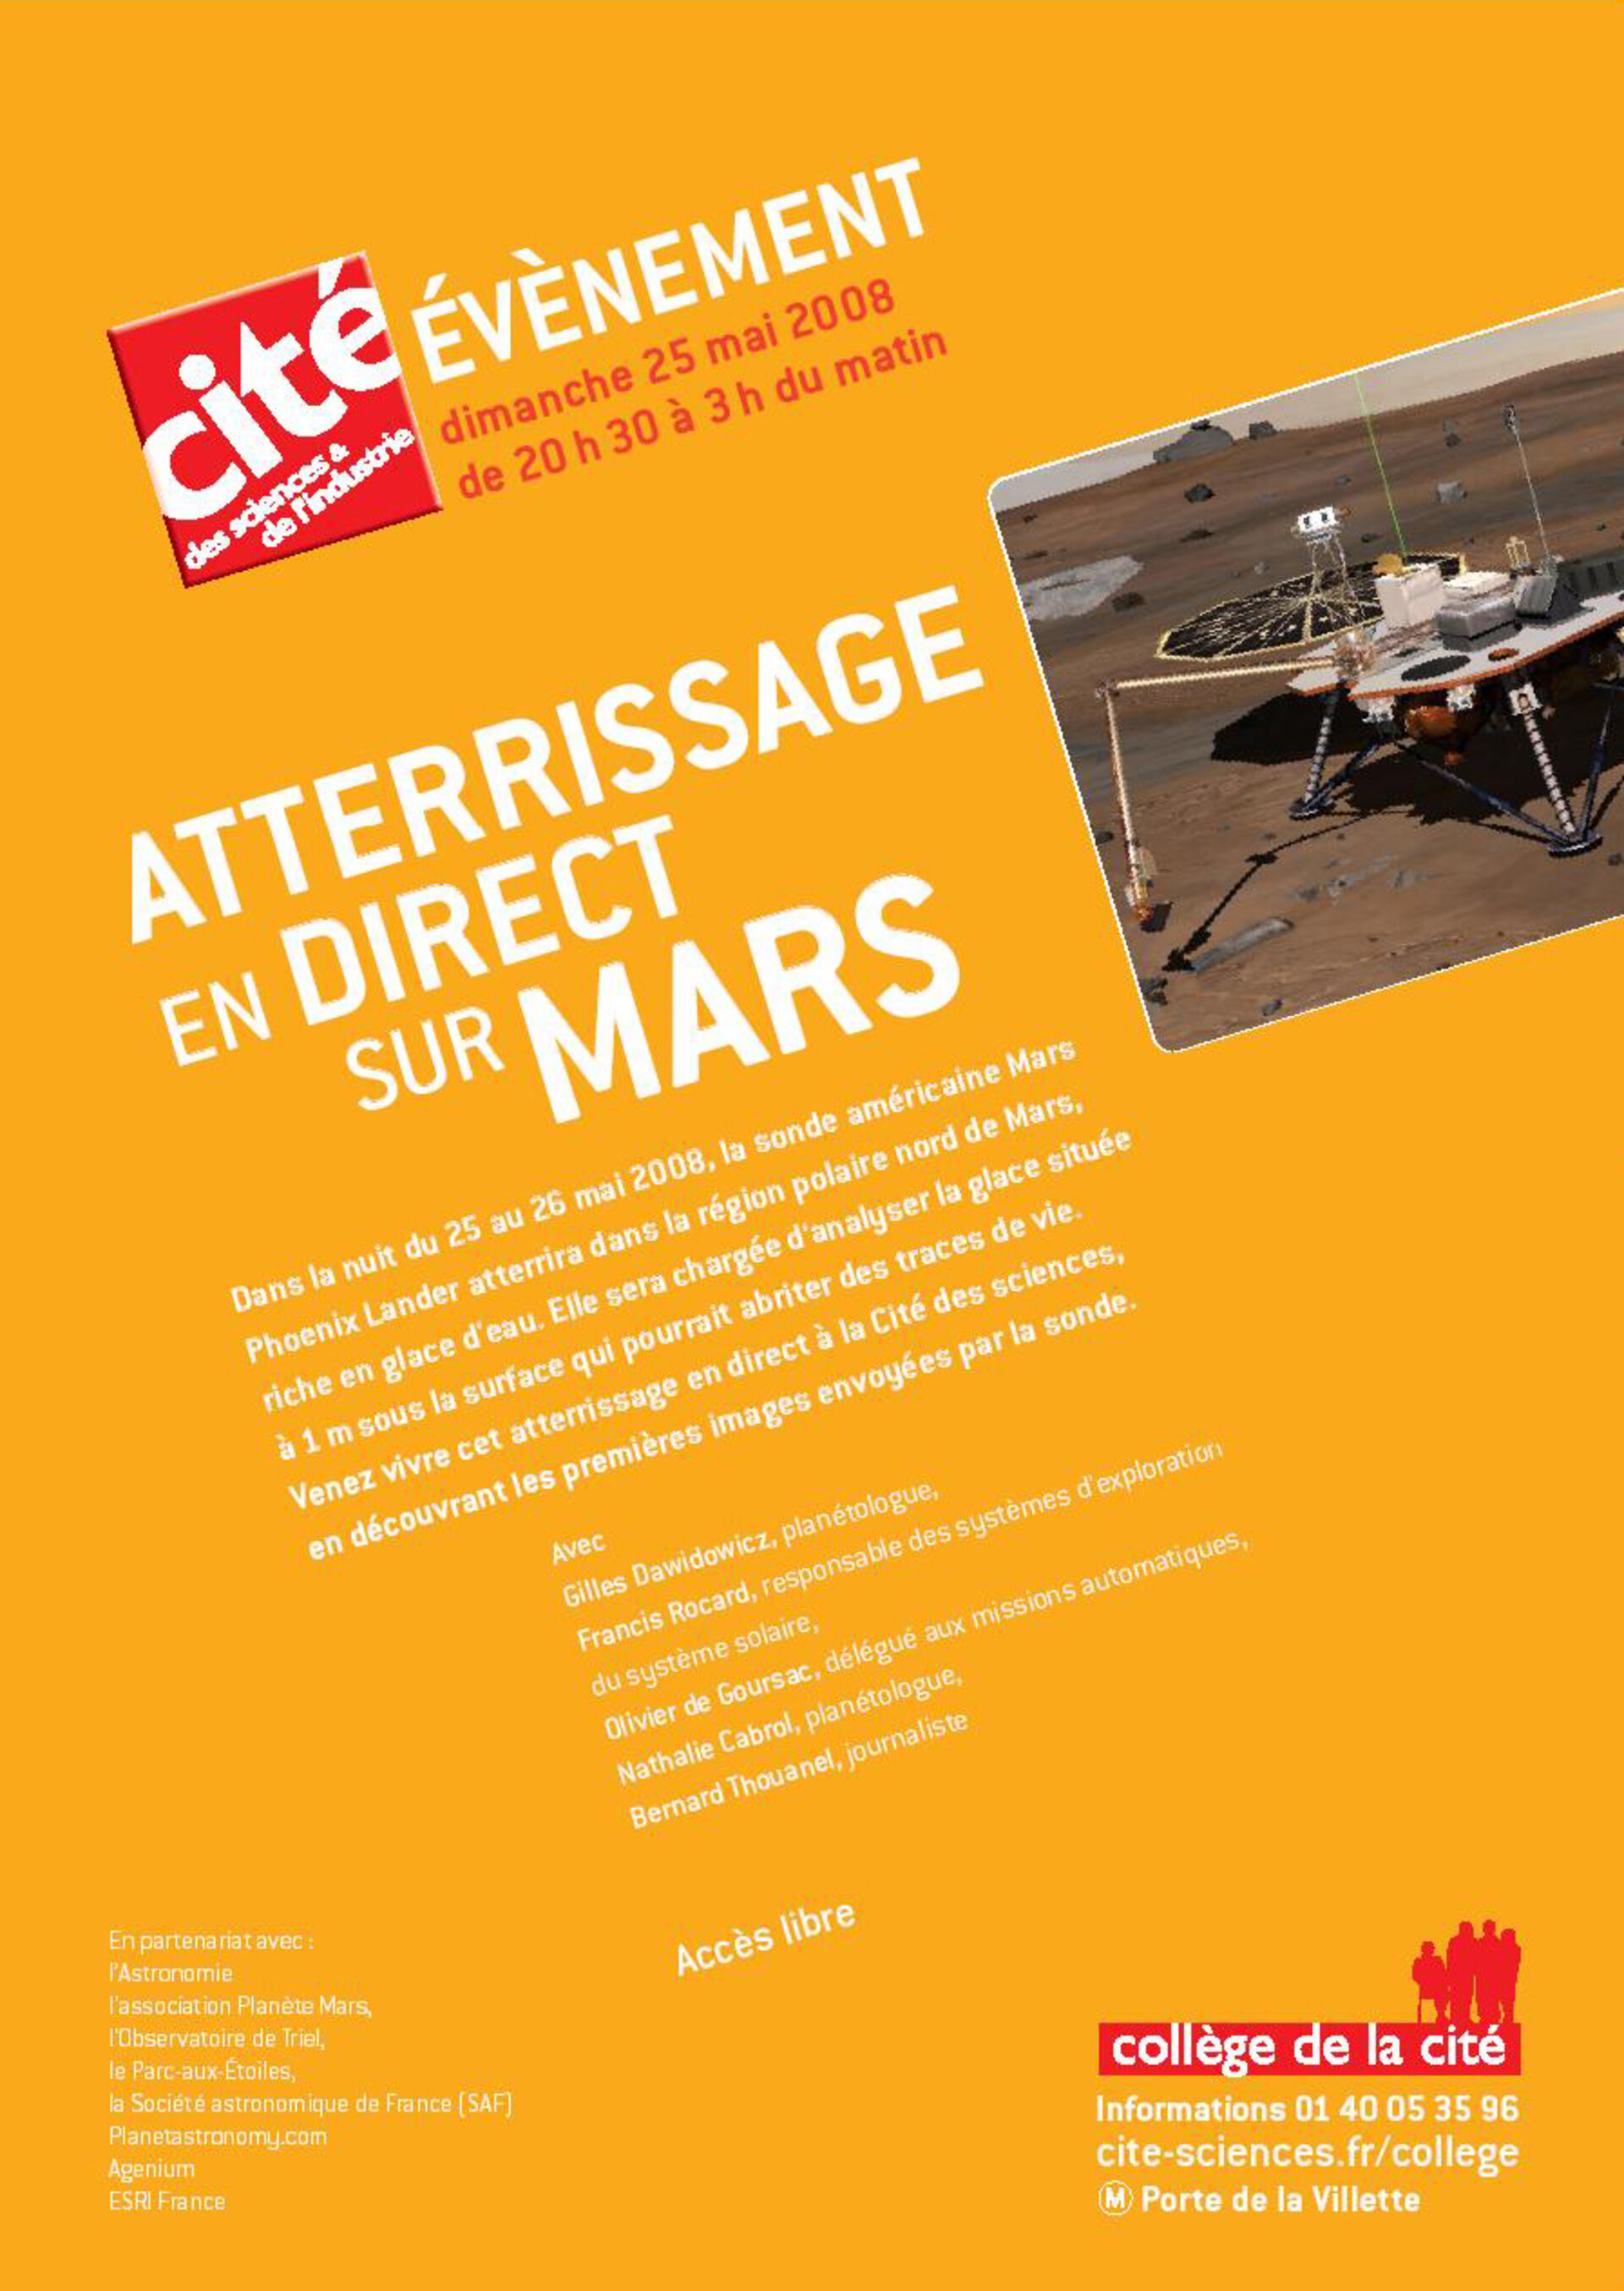 event poster of Cité des Sciences